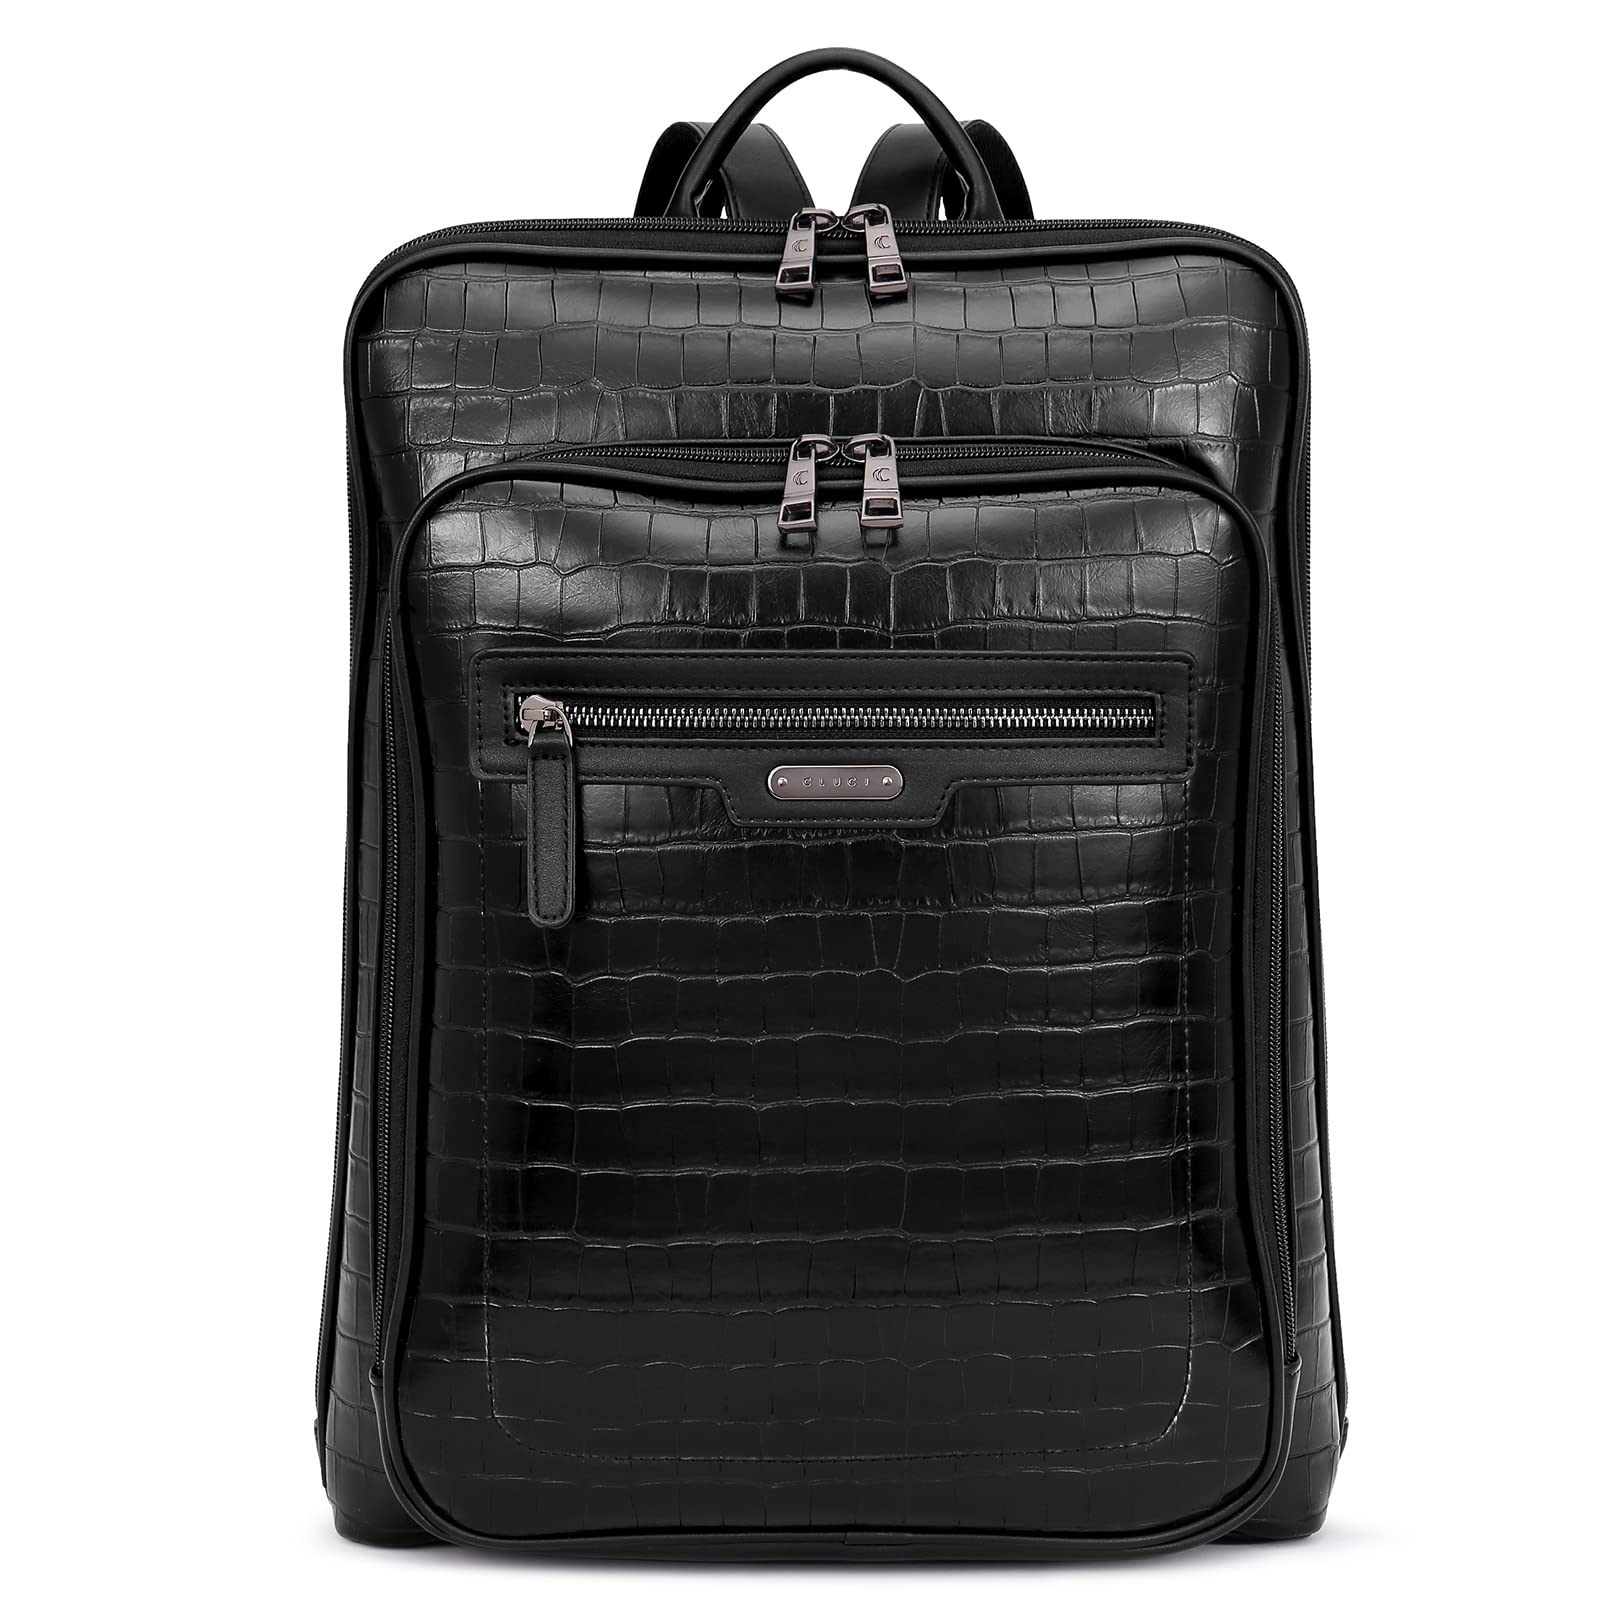 送料無料CLUCI Leather Laptop Backpack for Women 15.6 inch Computer Backpack Travel Business Work Large Daypack Black Croc